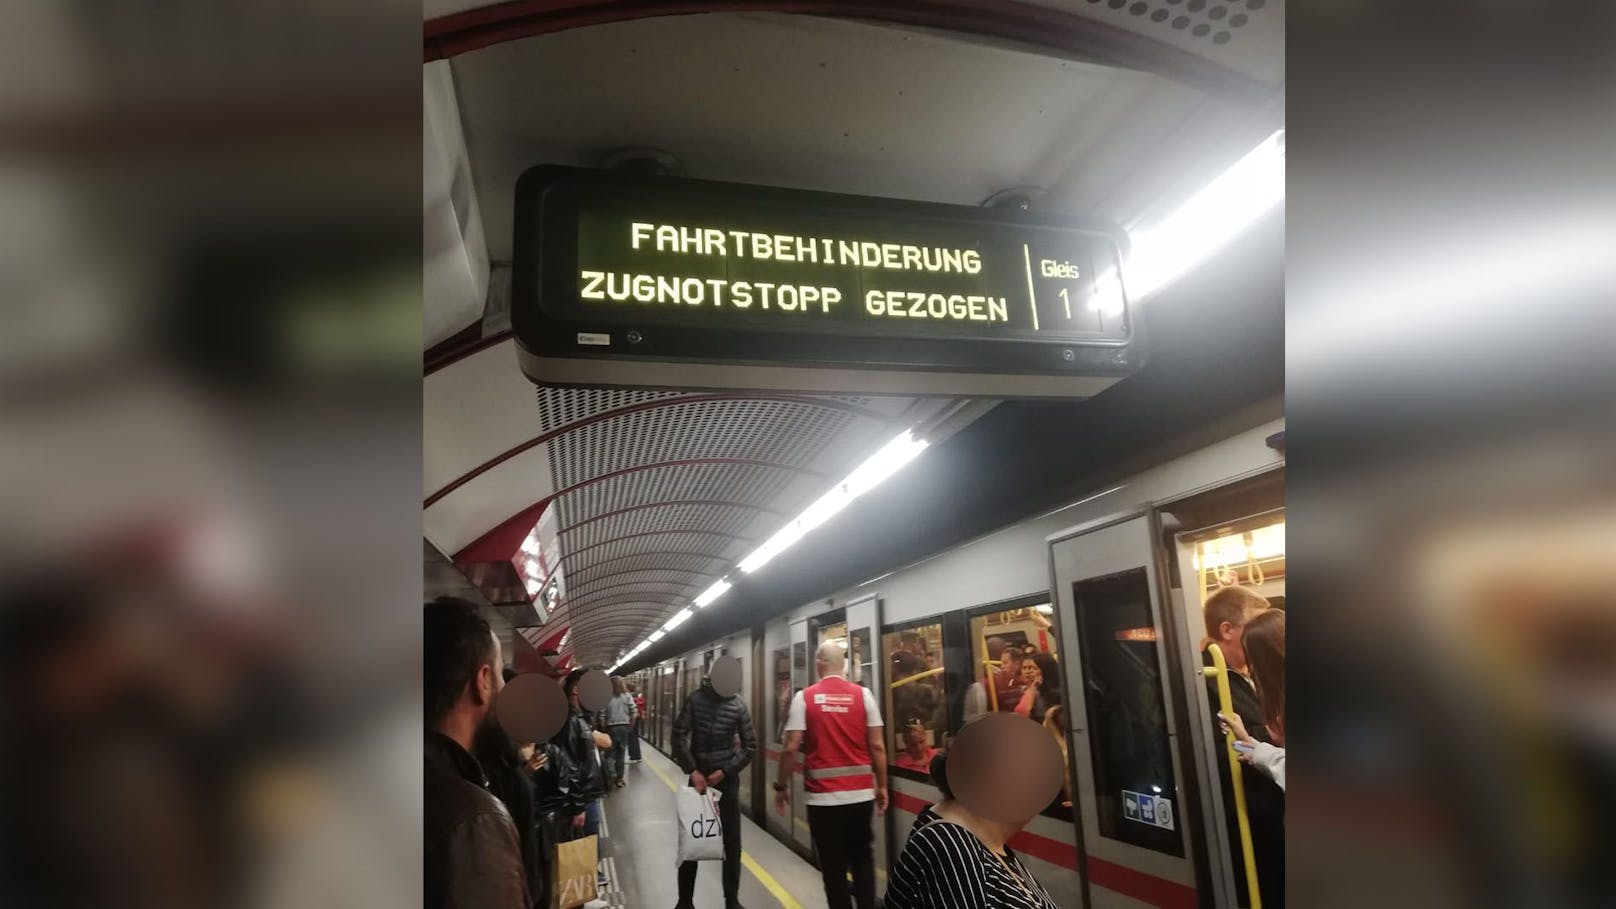 Wienerin drückt Zug-Notstopp, sorgt für Öffi-Chaos